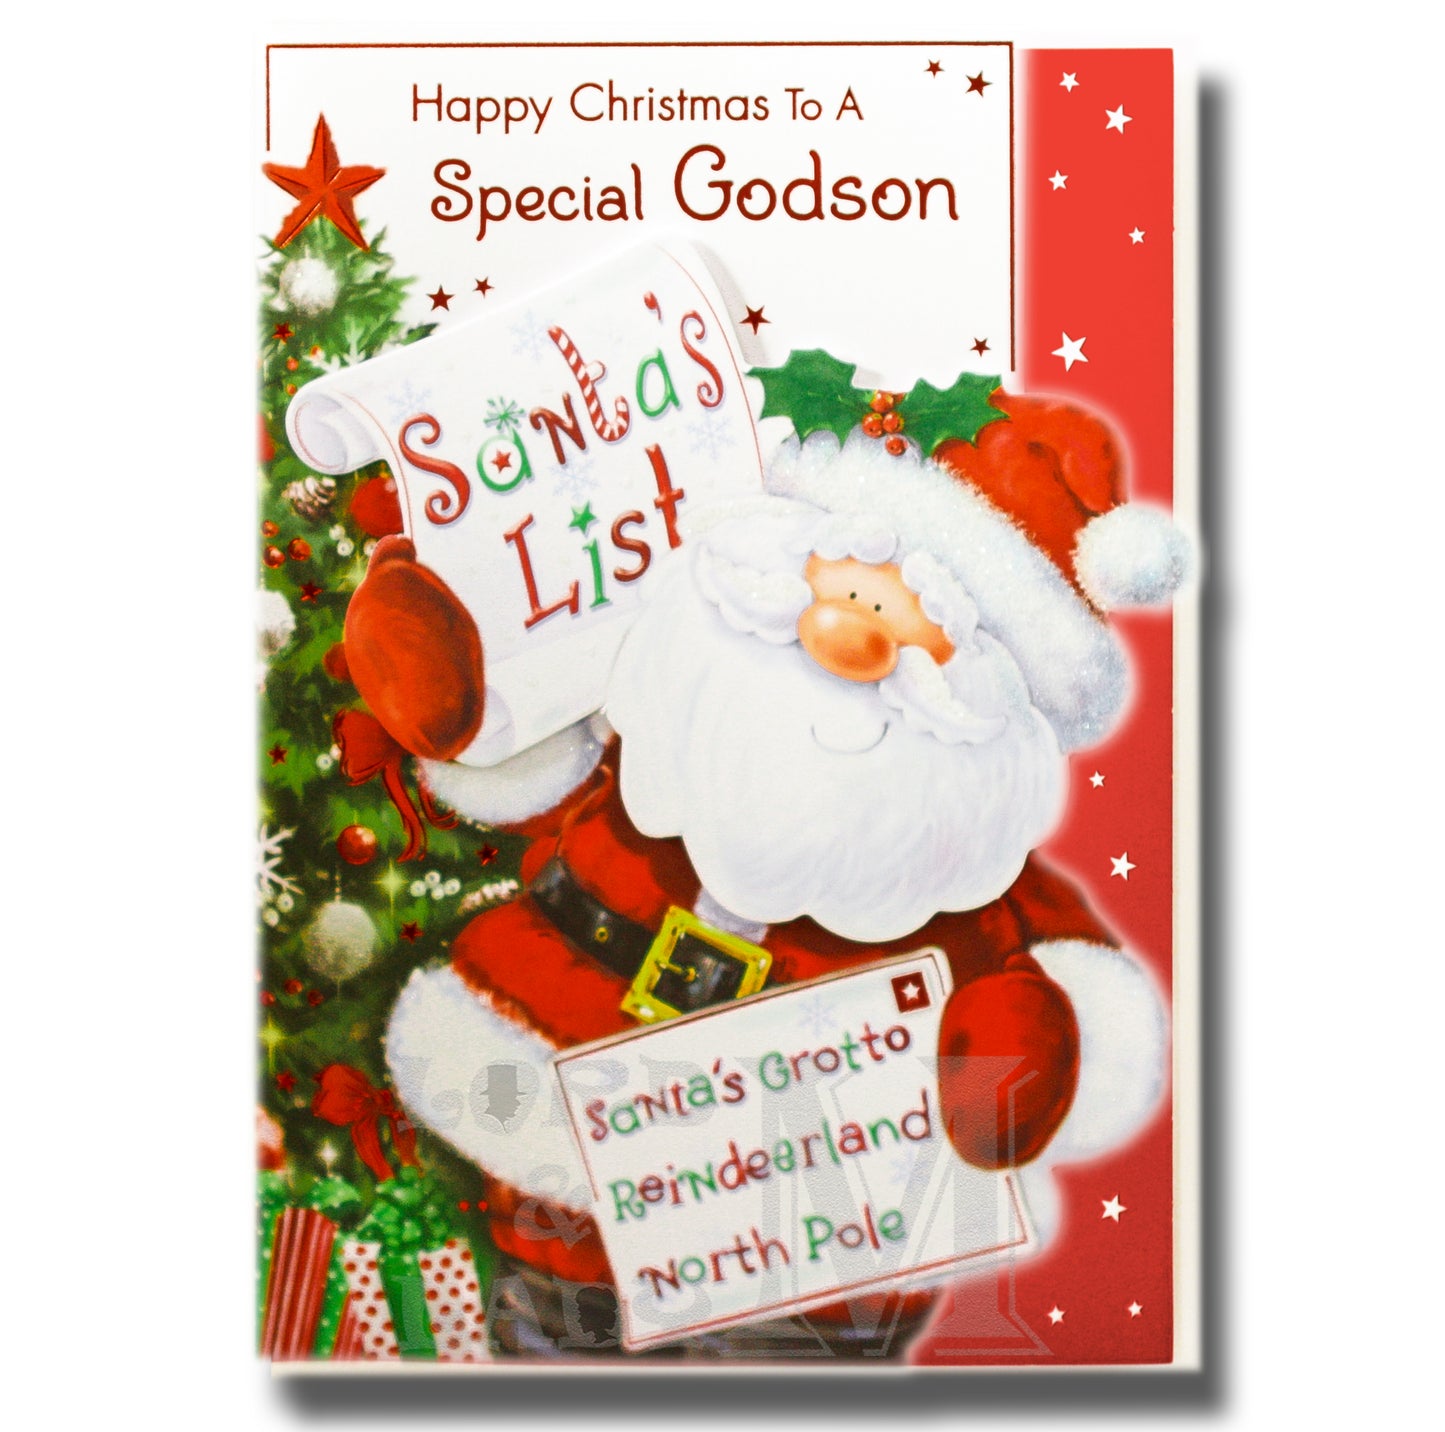 19cm - Happy Christmas To A Special Godson - BGC